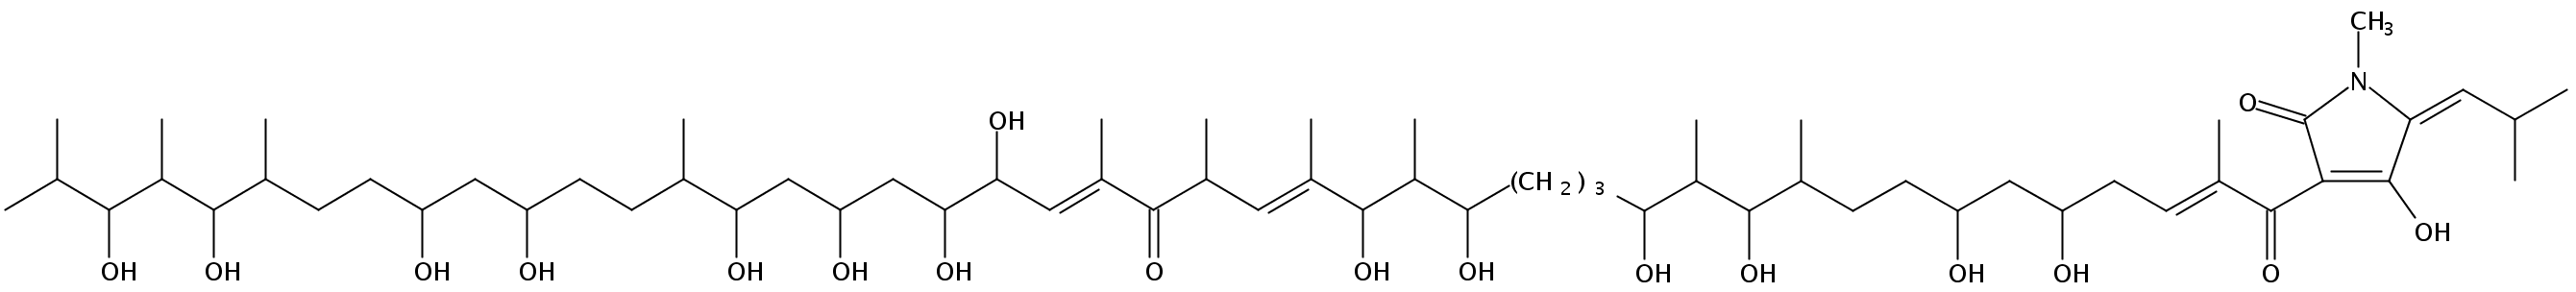 Amycomycin